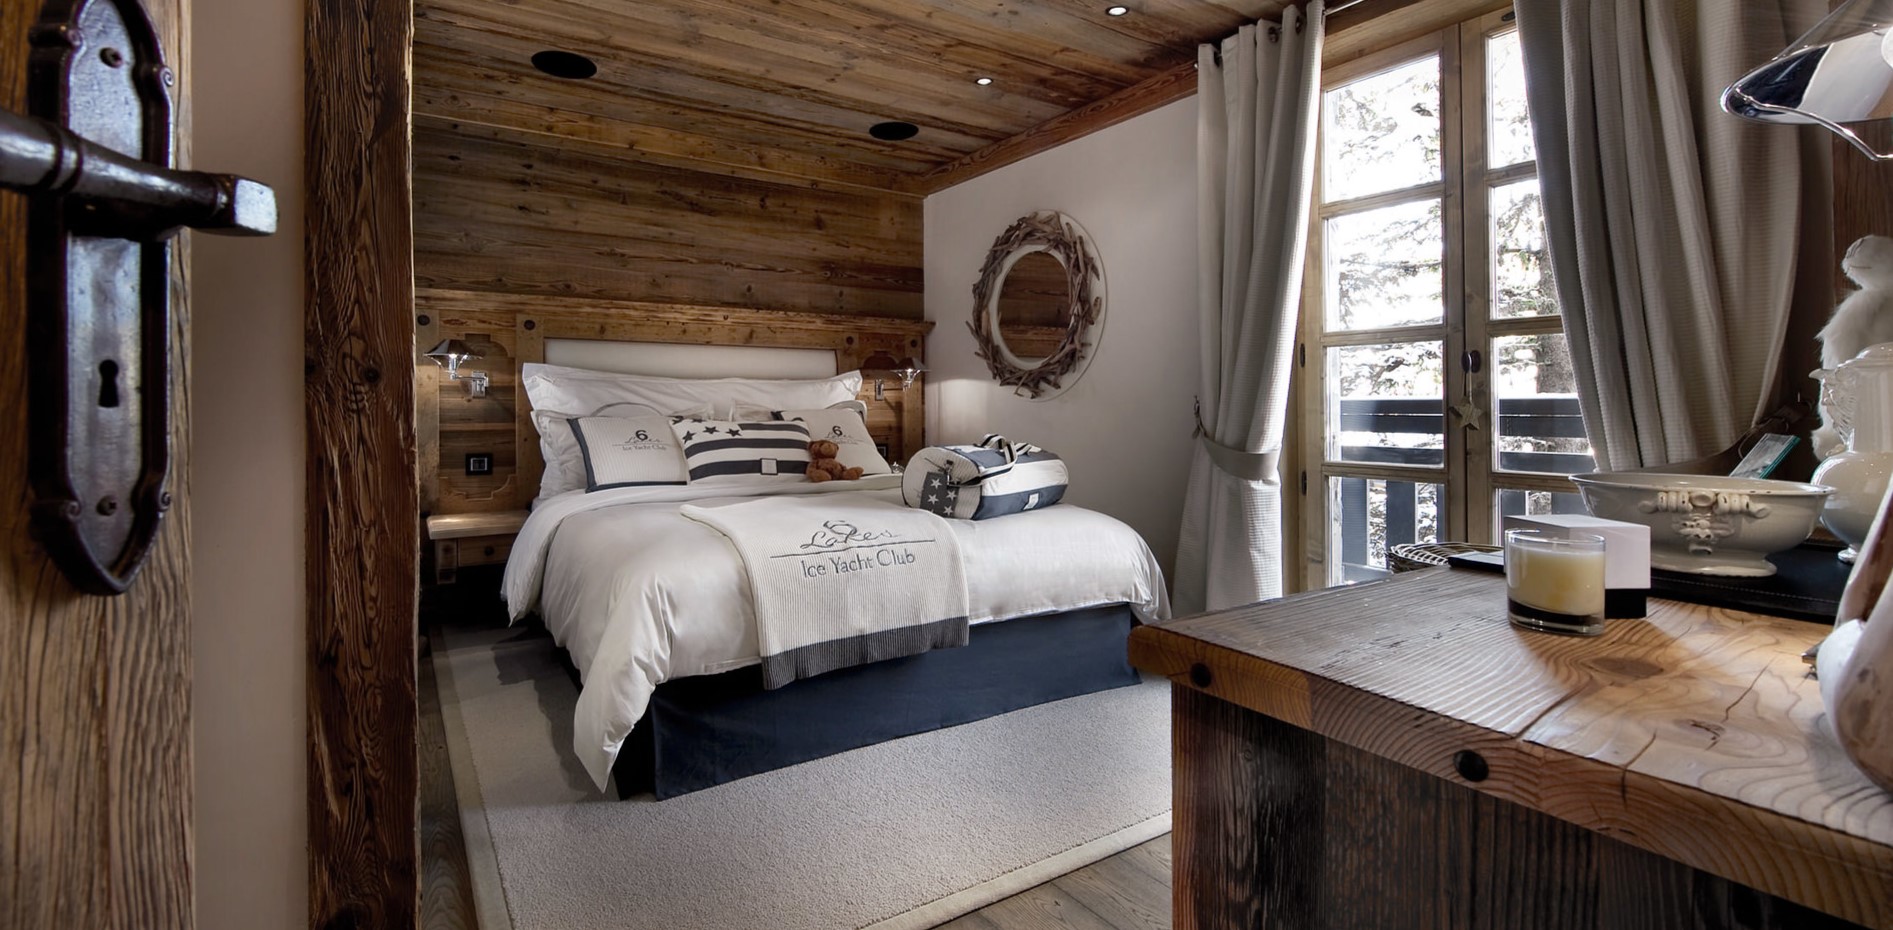 Кровать с деревянным изголовьем будет гармонично смотреться в загородном доме